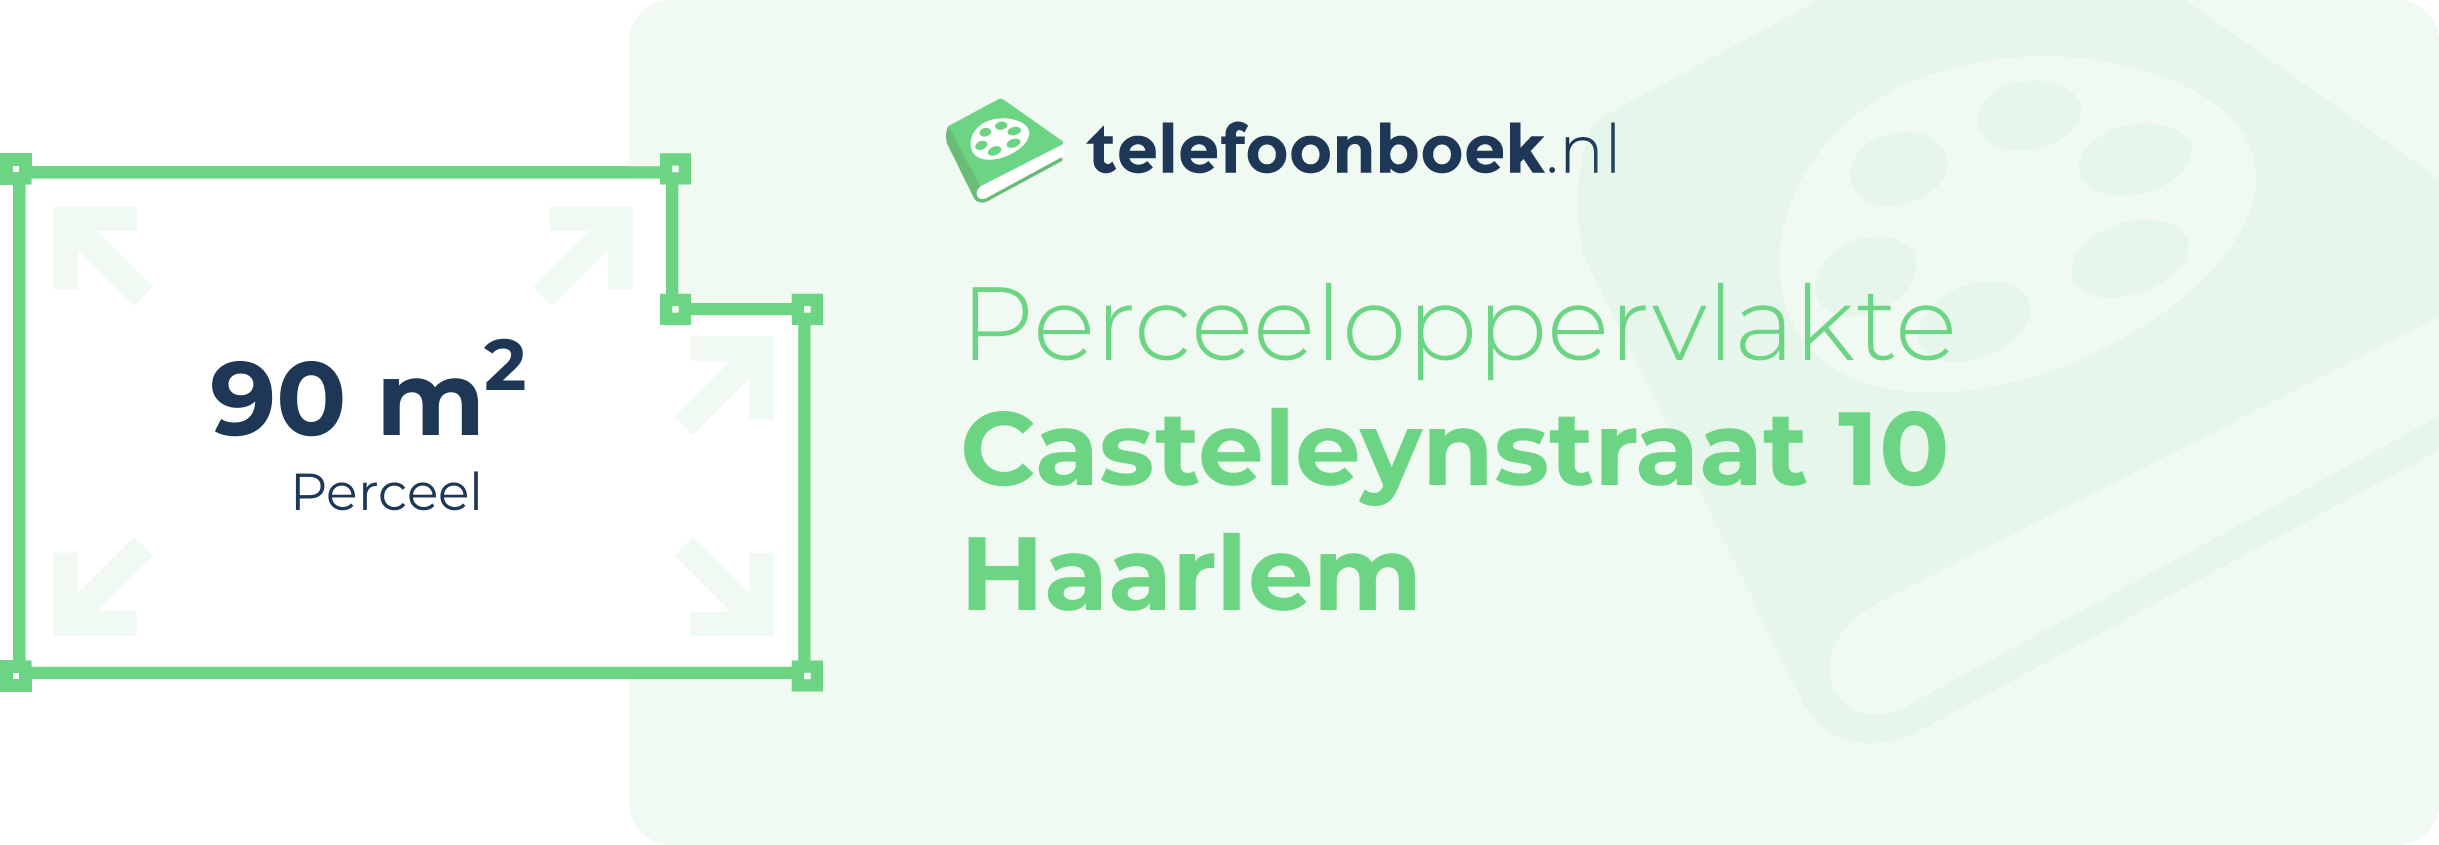 Perceeloppervlakte Casteleynstraat 10 Haarlem